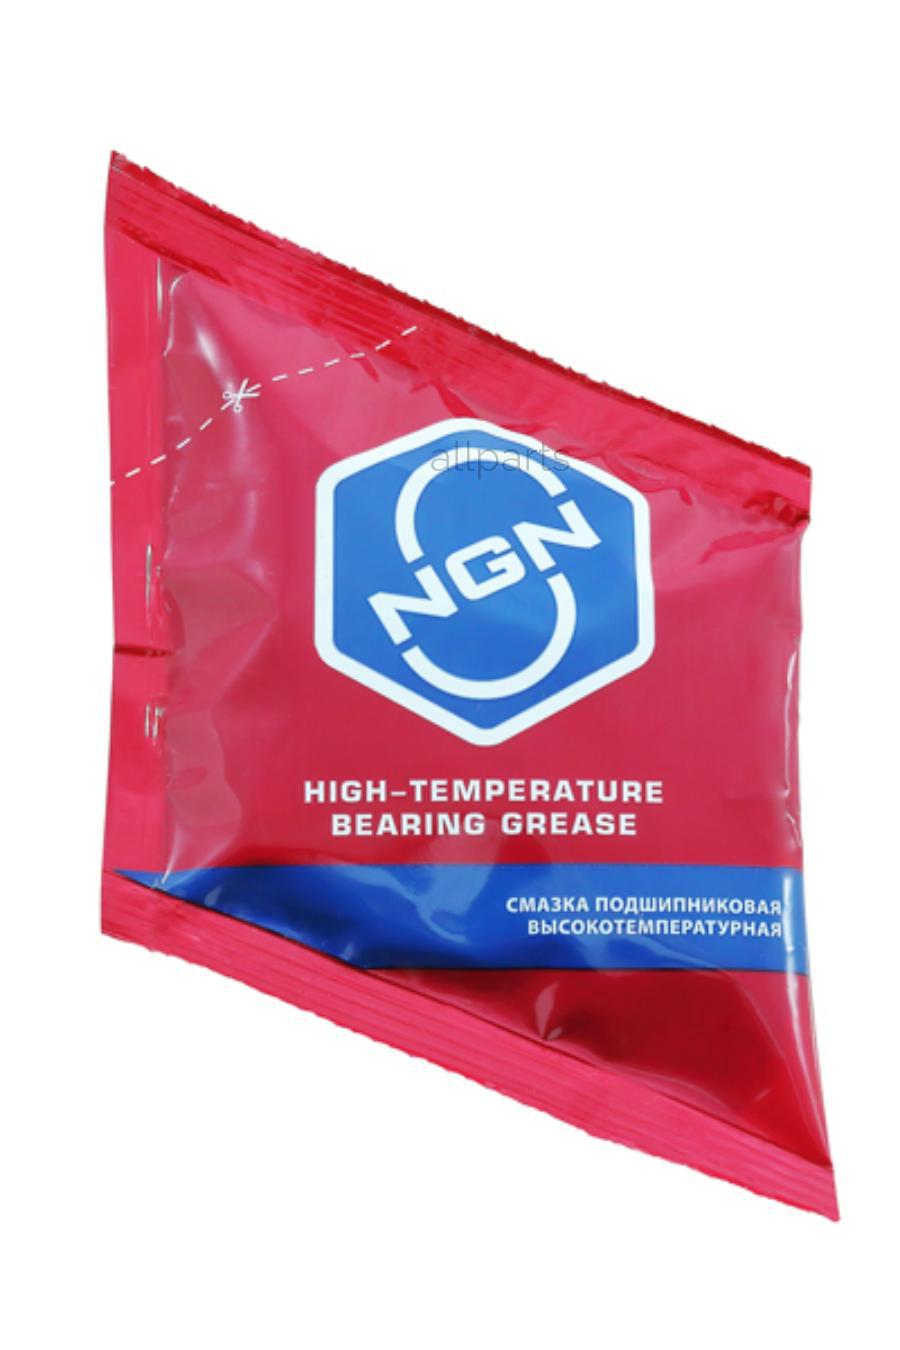 NGN V0067 High-Temperature Bearing Grease Смазка подшипниковая высокотемпературная 40 гр